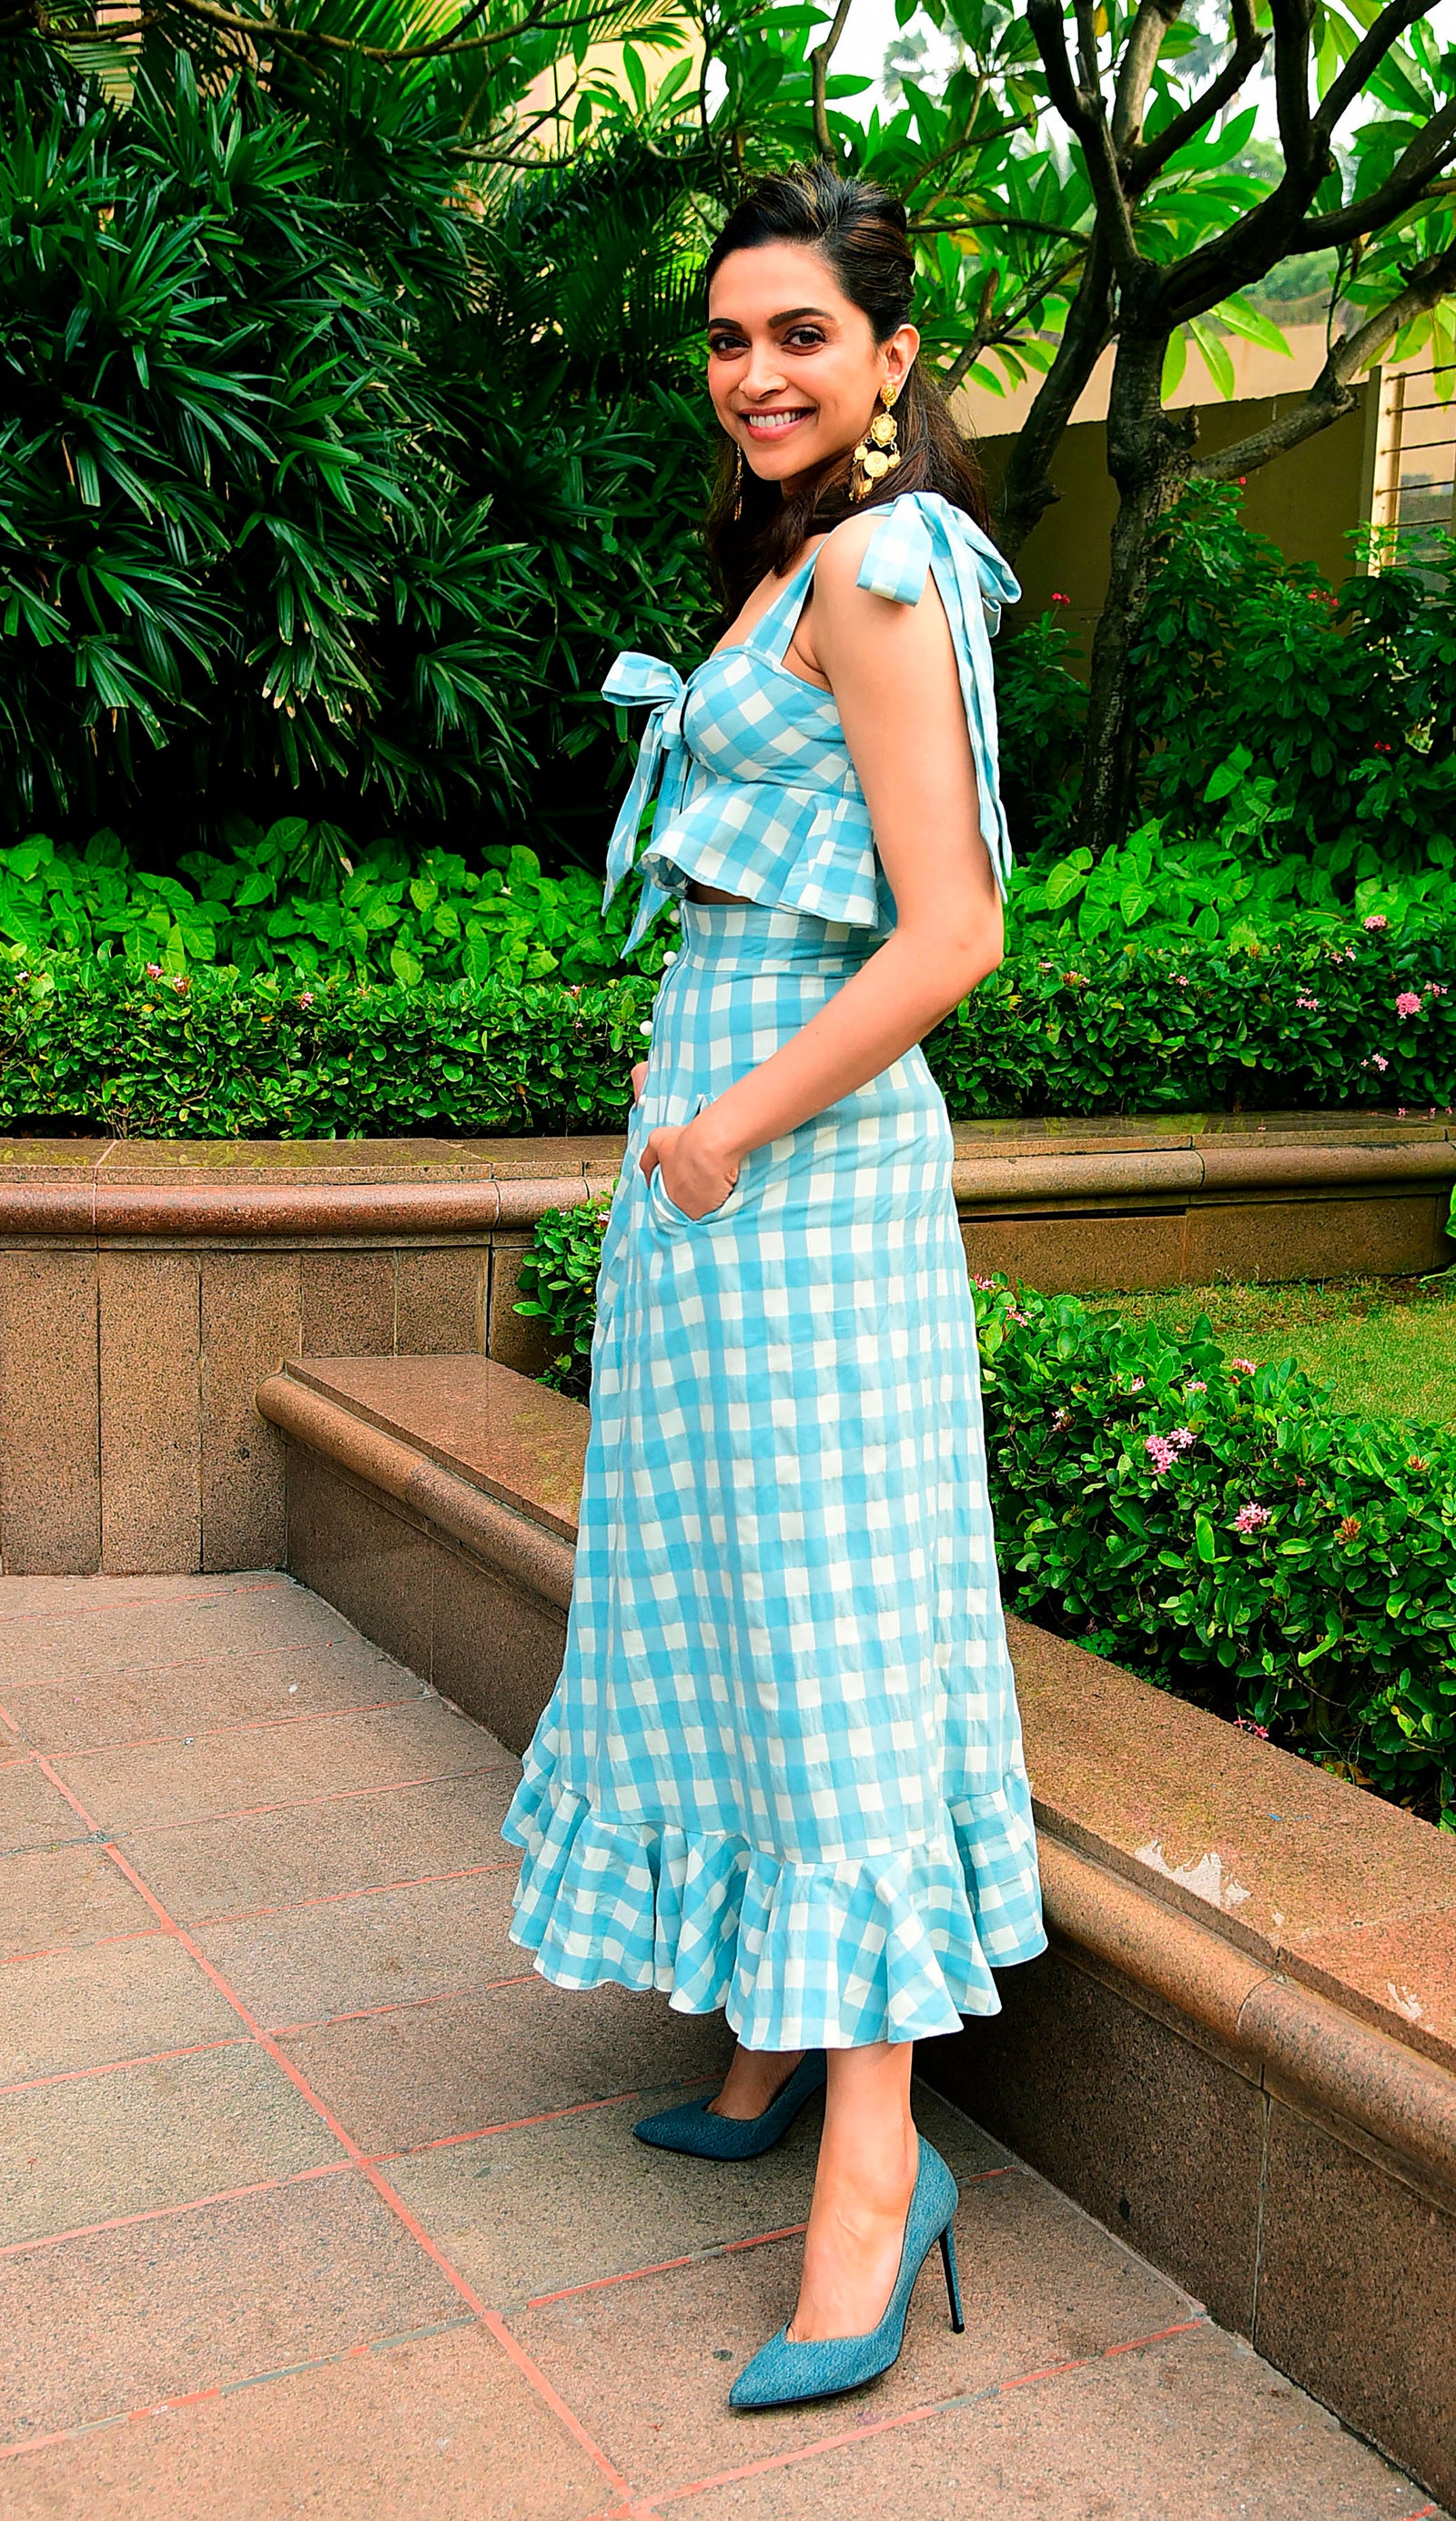  Nữ diễn viên trẻ trung trong chiếc váy kẻ ca rô xanh- trắng cùng giày cao gót xanh đồng điệu.